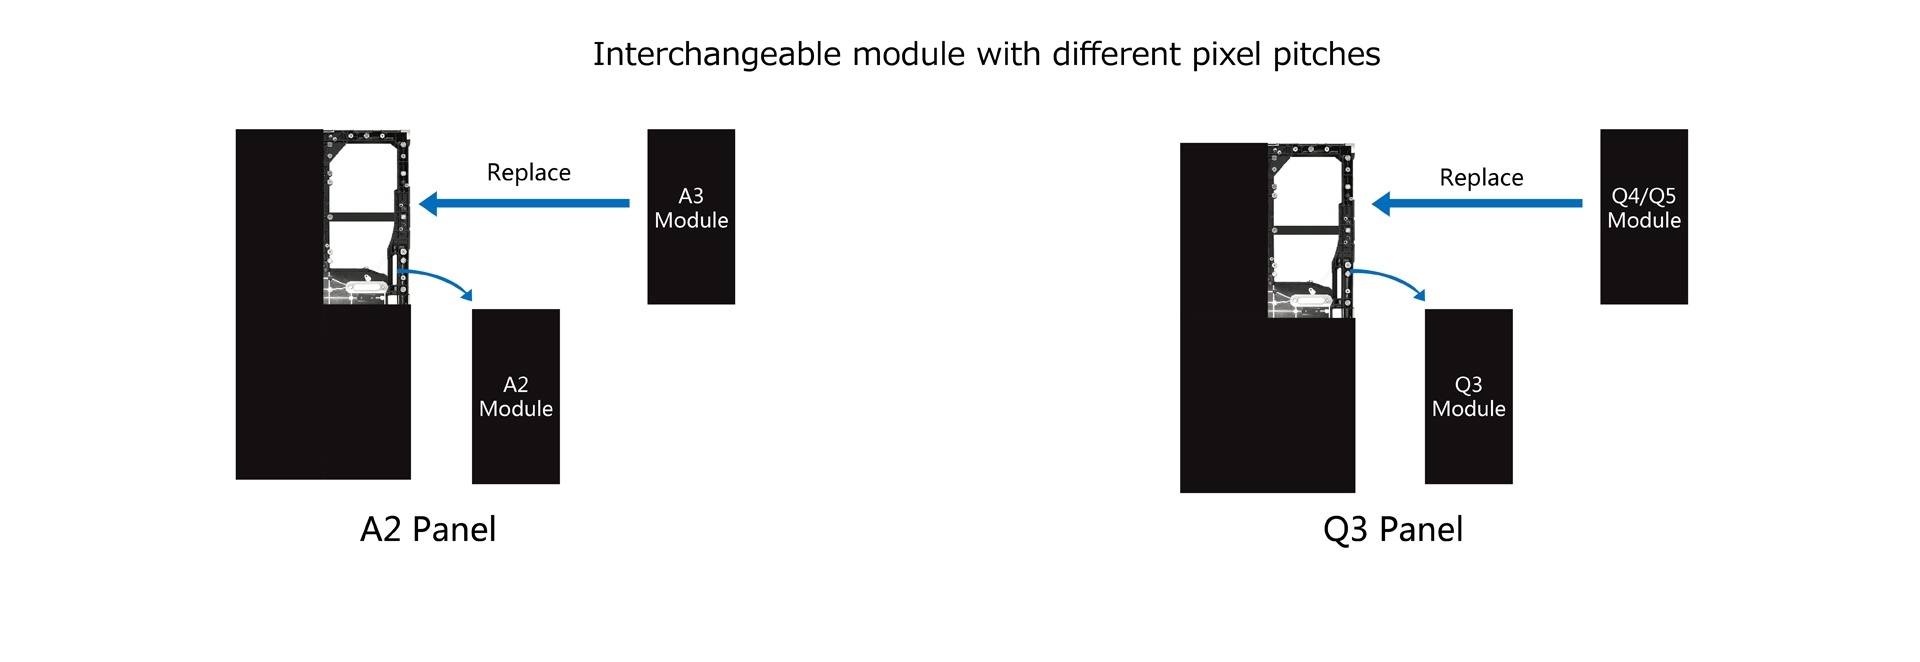 Cùng một khung Cabinet có thể hoán đổi các mô-đun với Pixel Pitch khác nhau